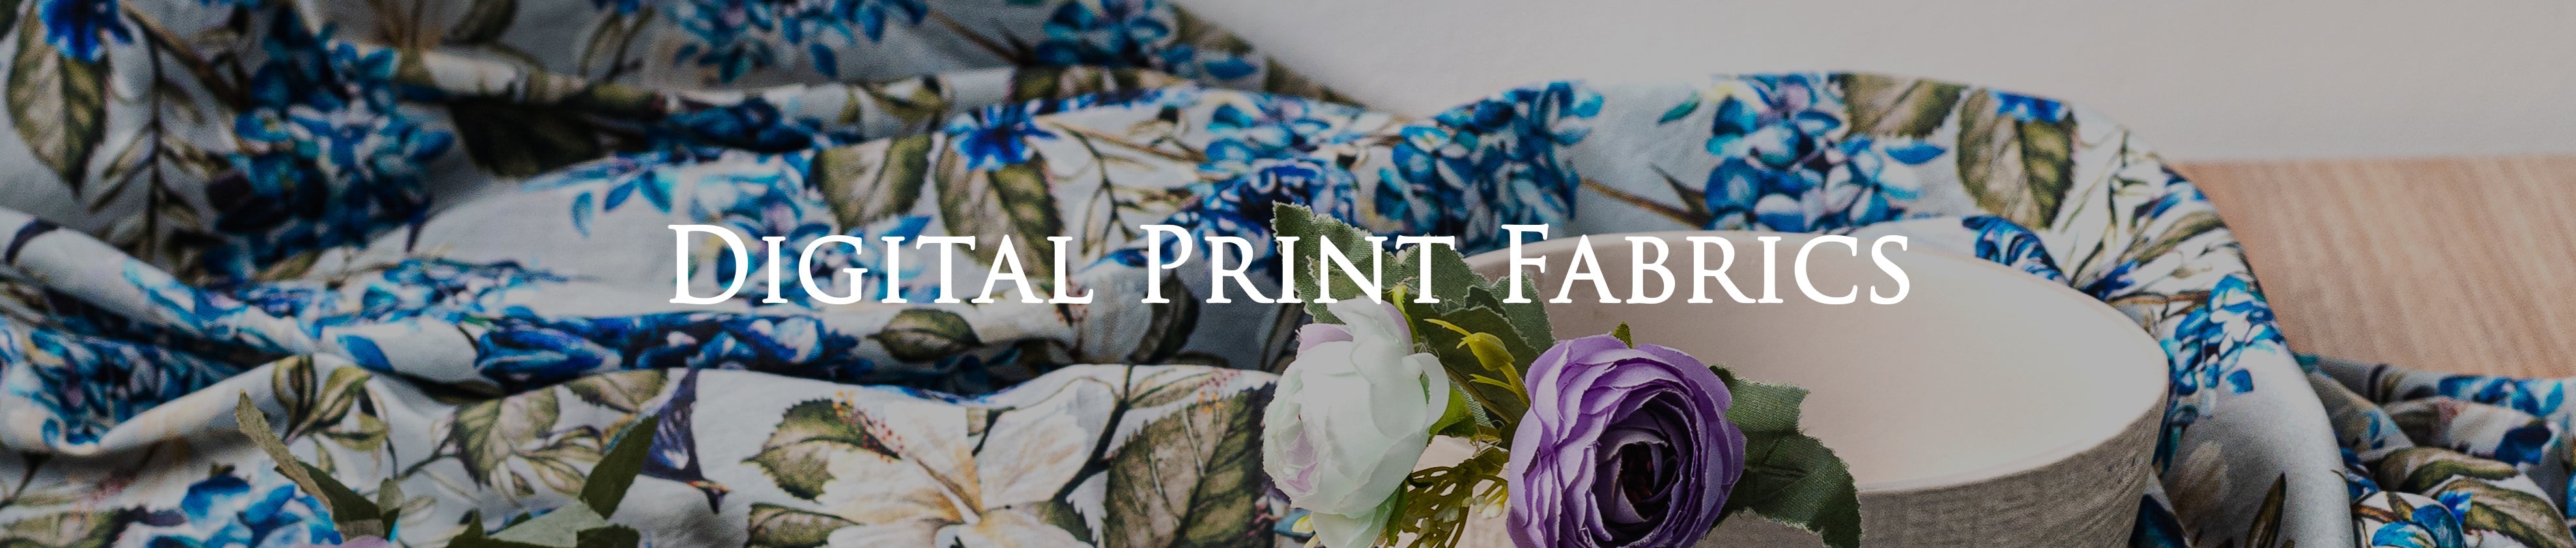 Digital printed fabric